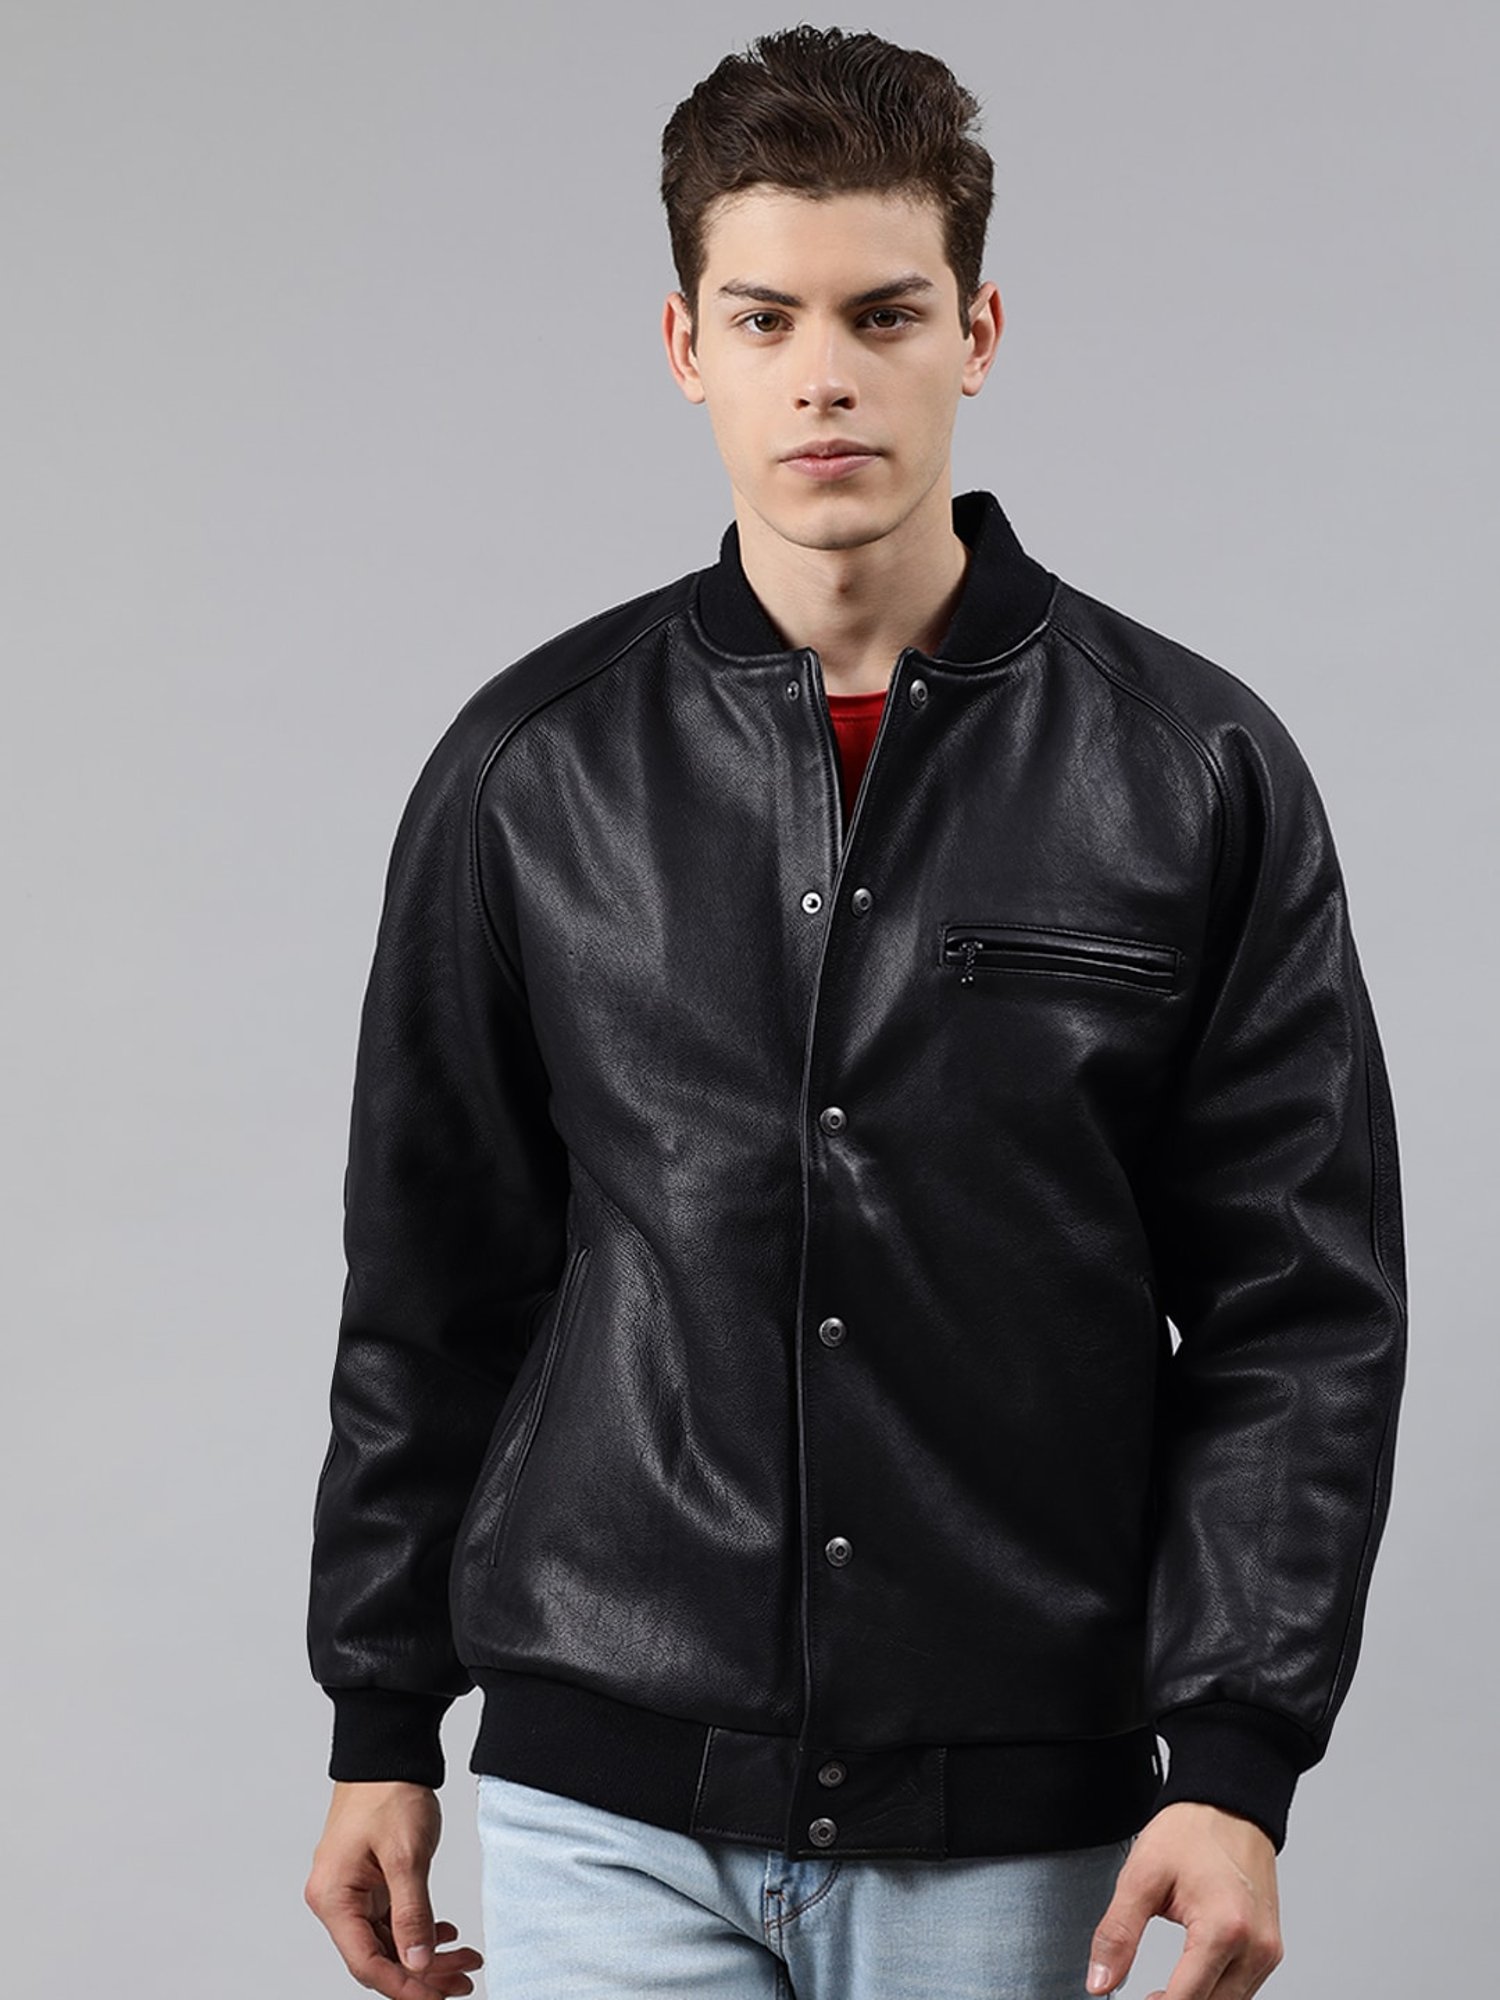 Buy Lee Navy Full Sleeves Jacket for Men Online @ Tata CLiQ